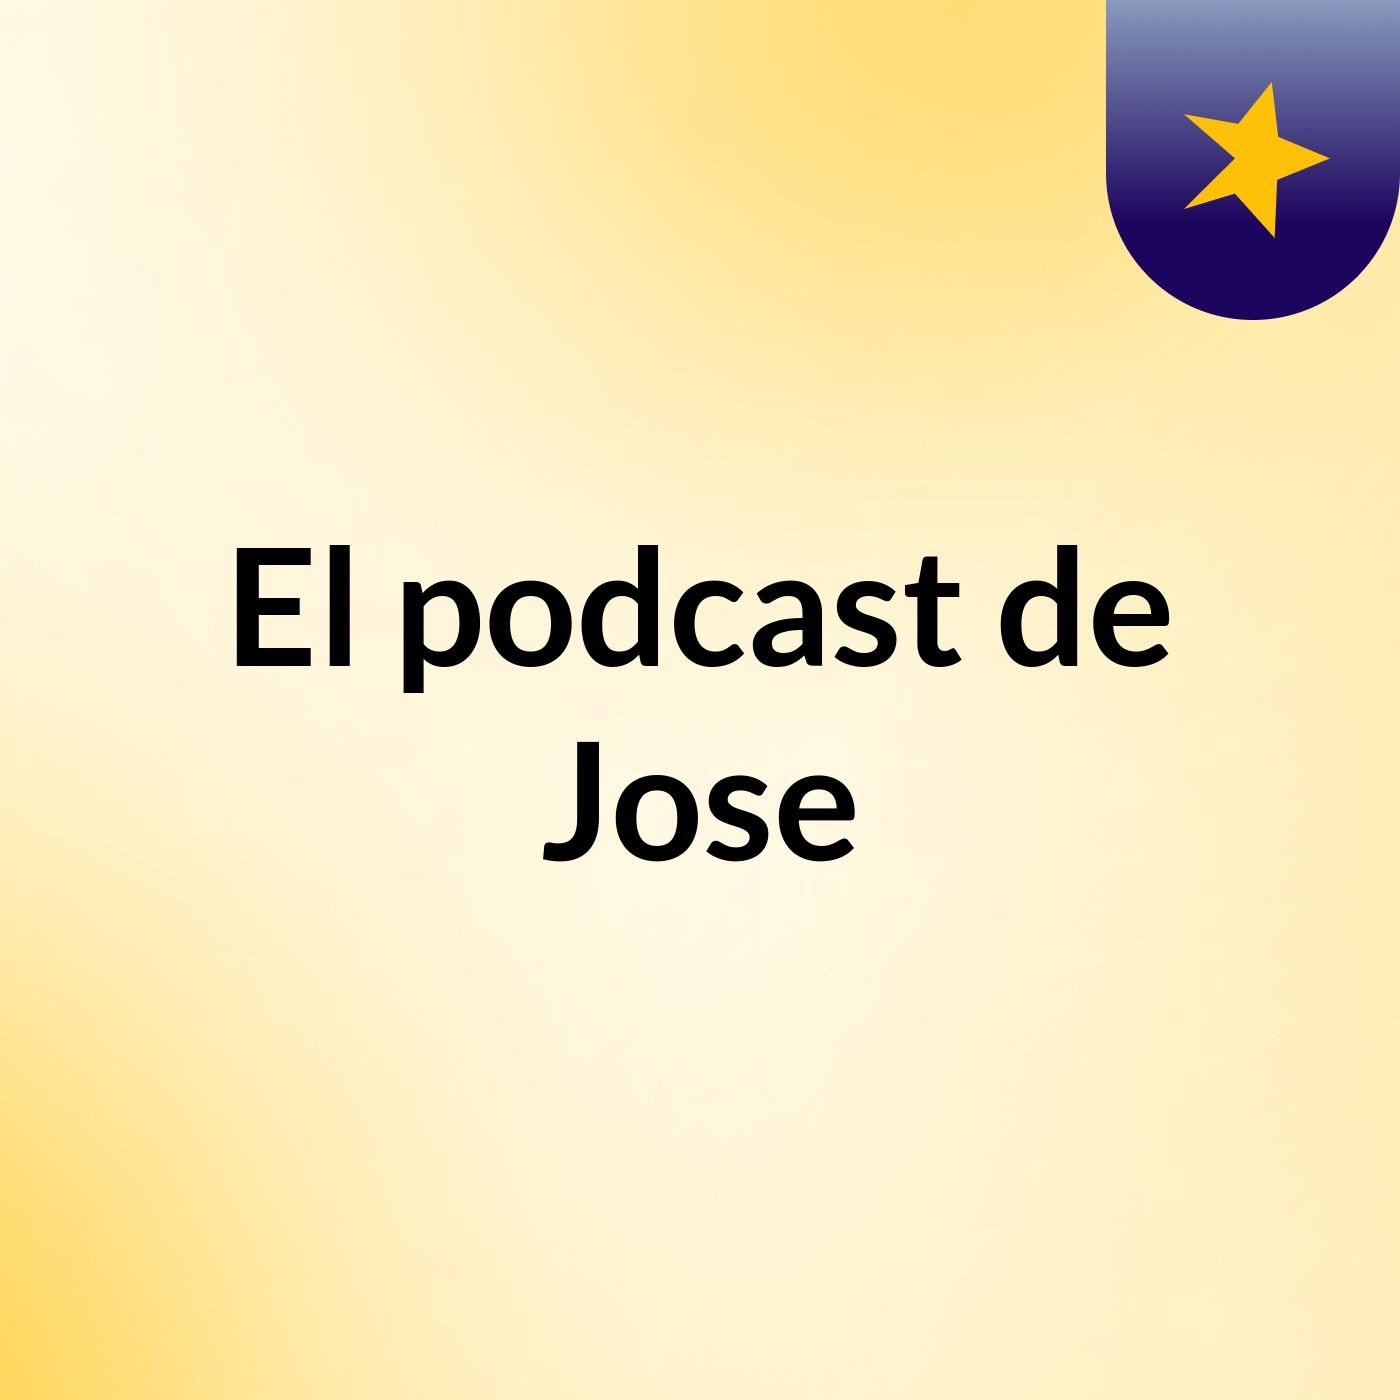 El podcast de Jose